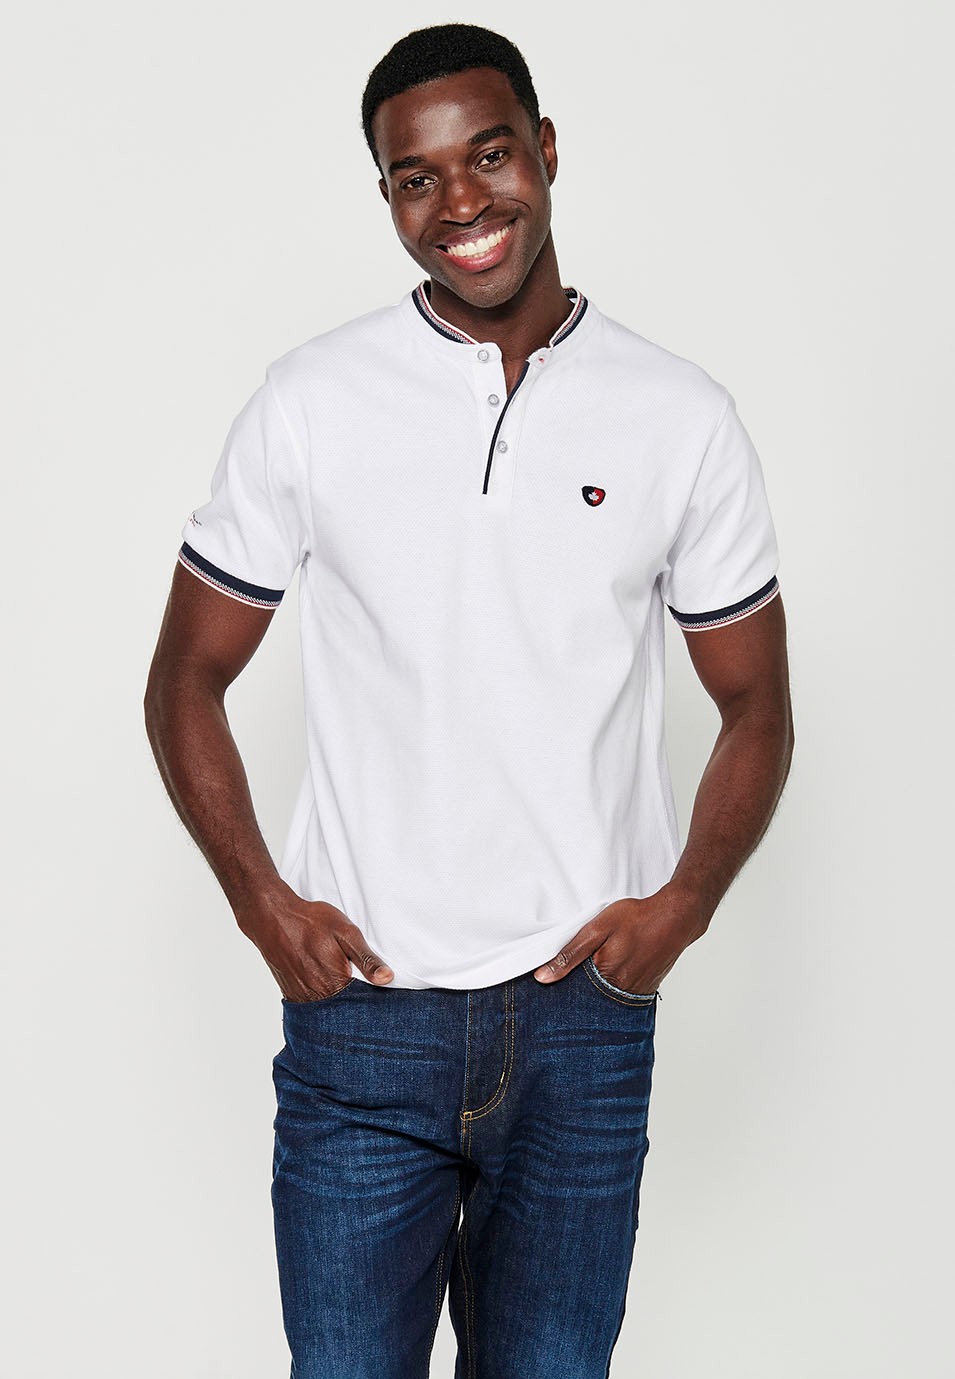 Kurzarm-Poloshirt aus gerippter Baumwolle mit Rundhalsausschnitt, geknöpfter Öffnung, Struktur und Seitenschlitzen in Weiß für Herren